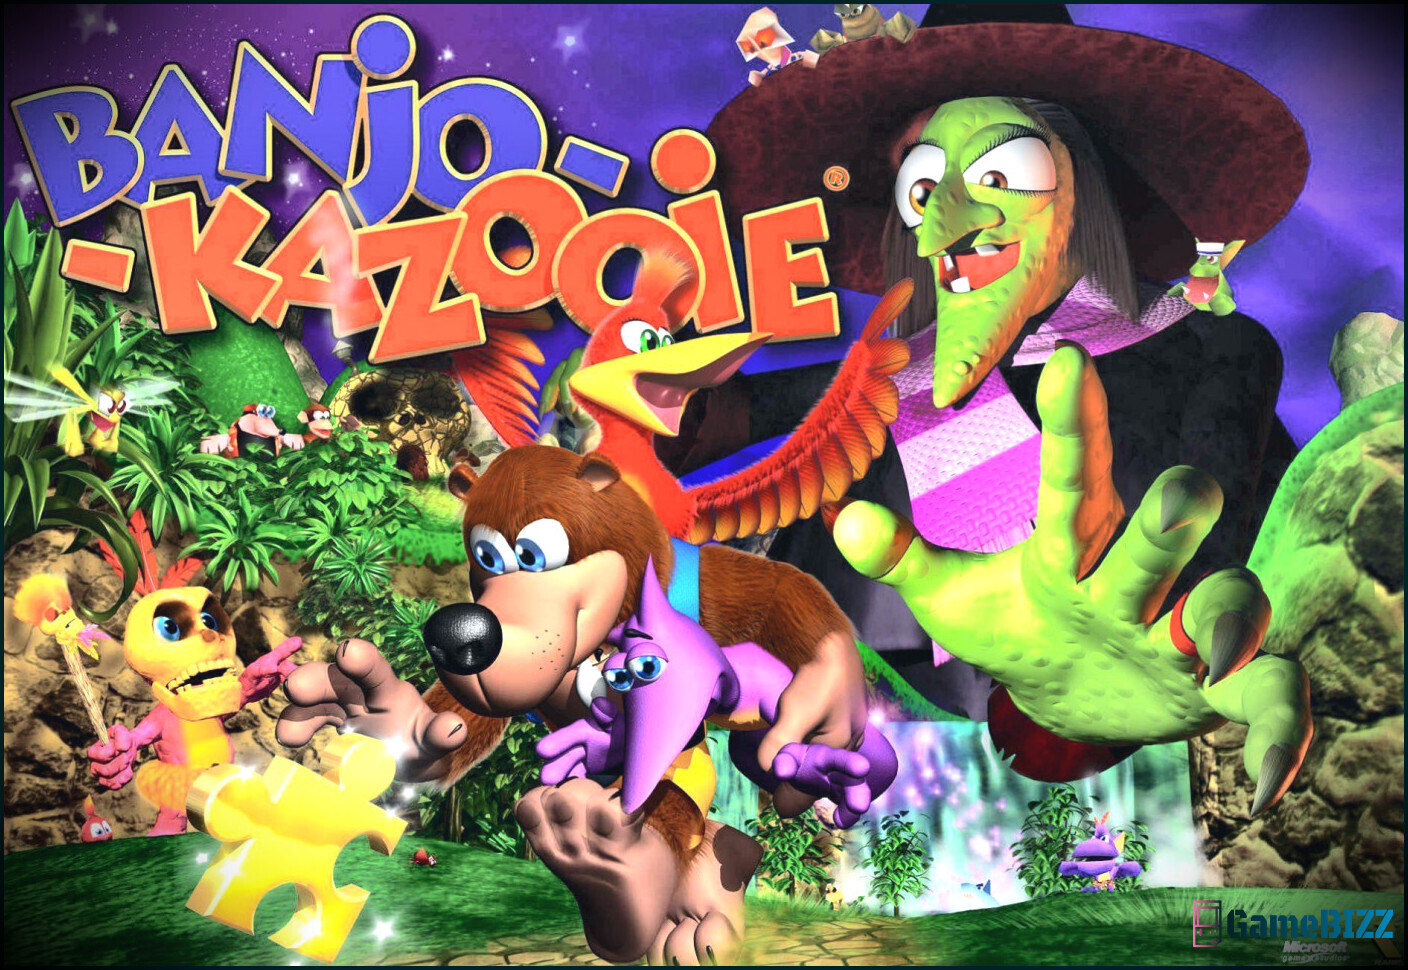 Ehemalige Rare-Entwickler sagen, dass es kein Publikum für ein neues Banjo-Kazooie gibt